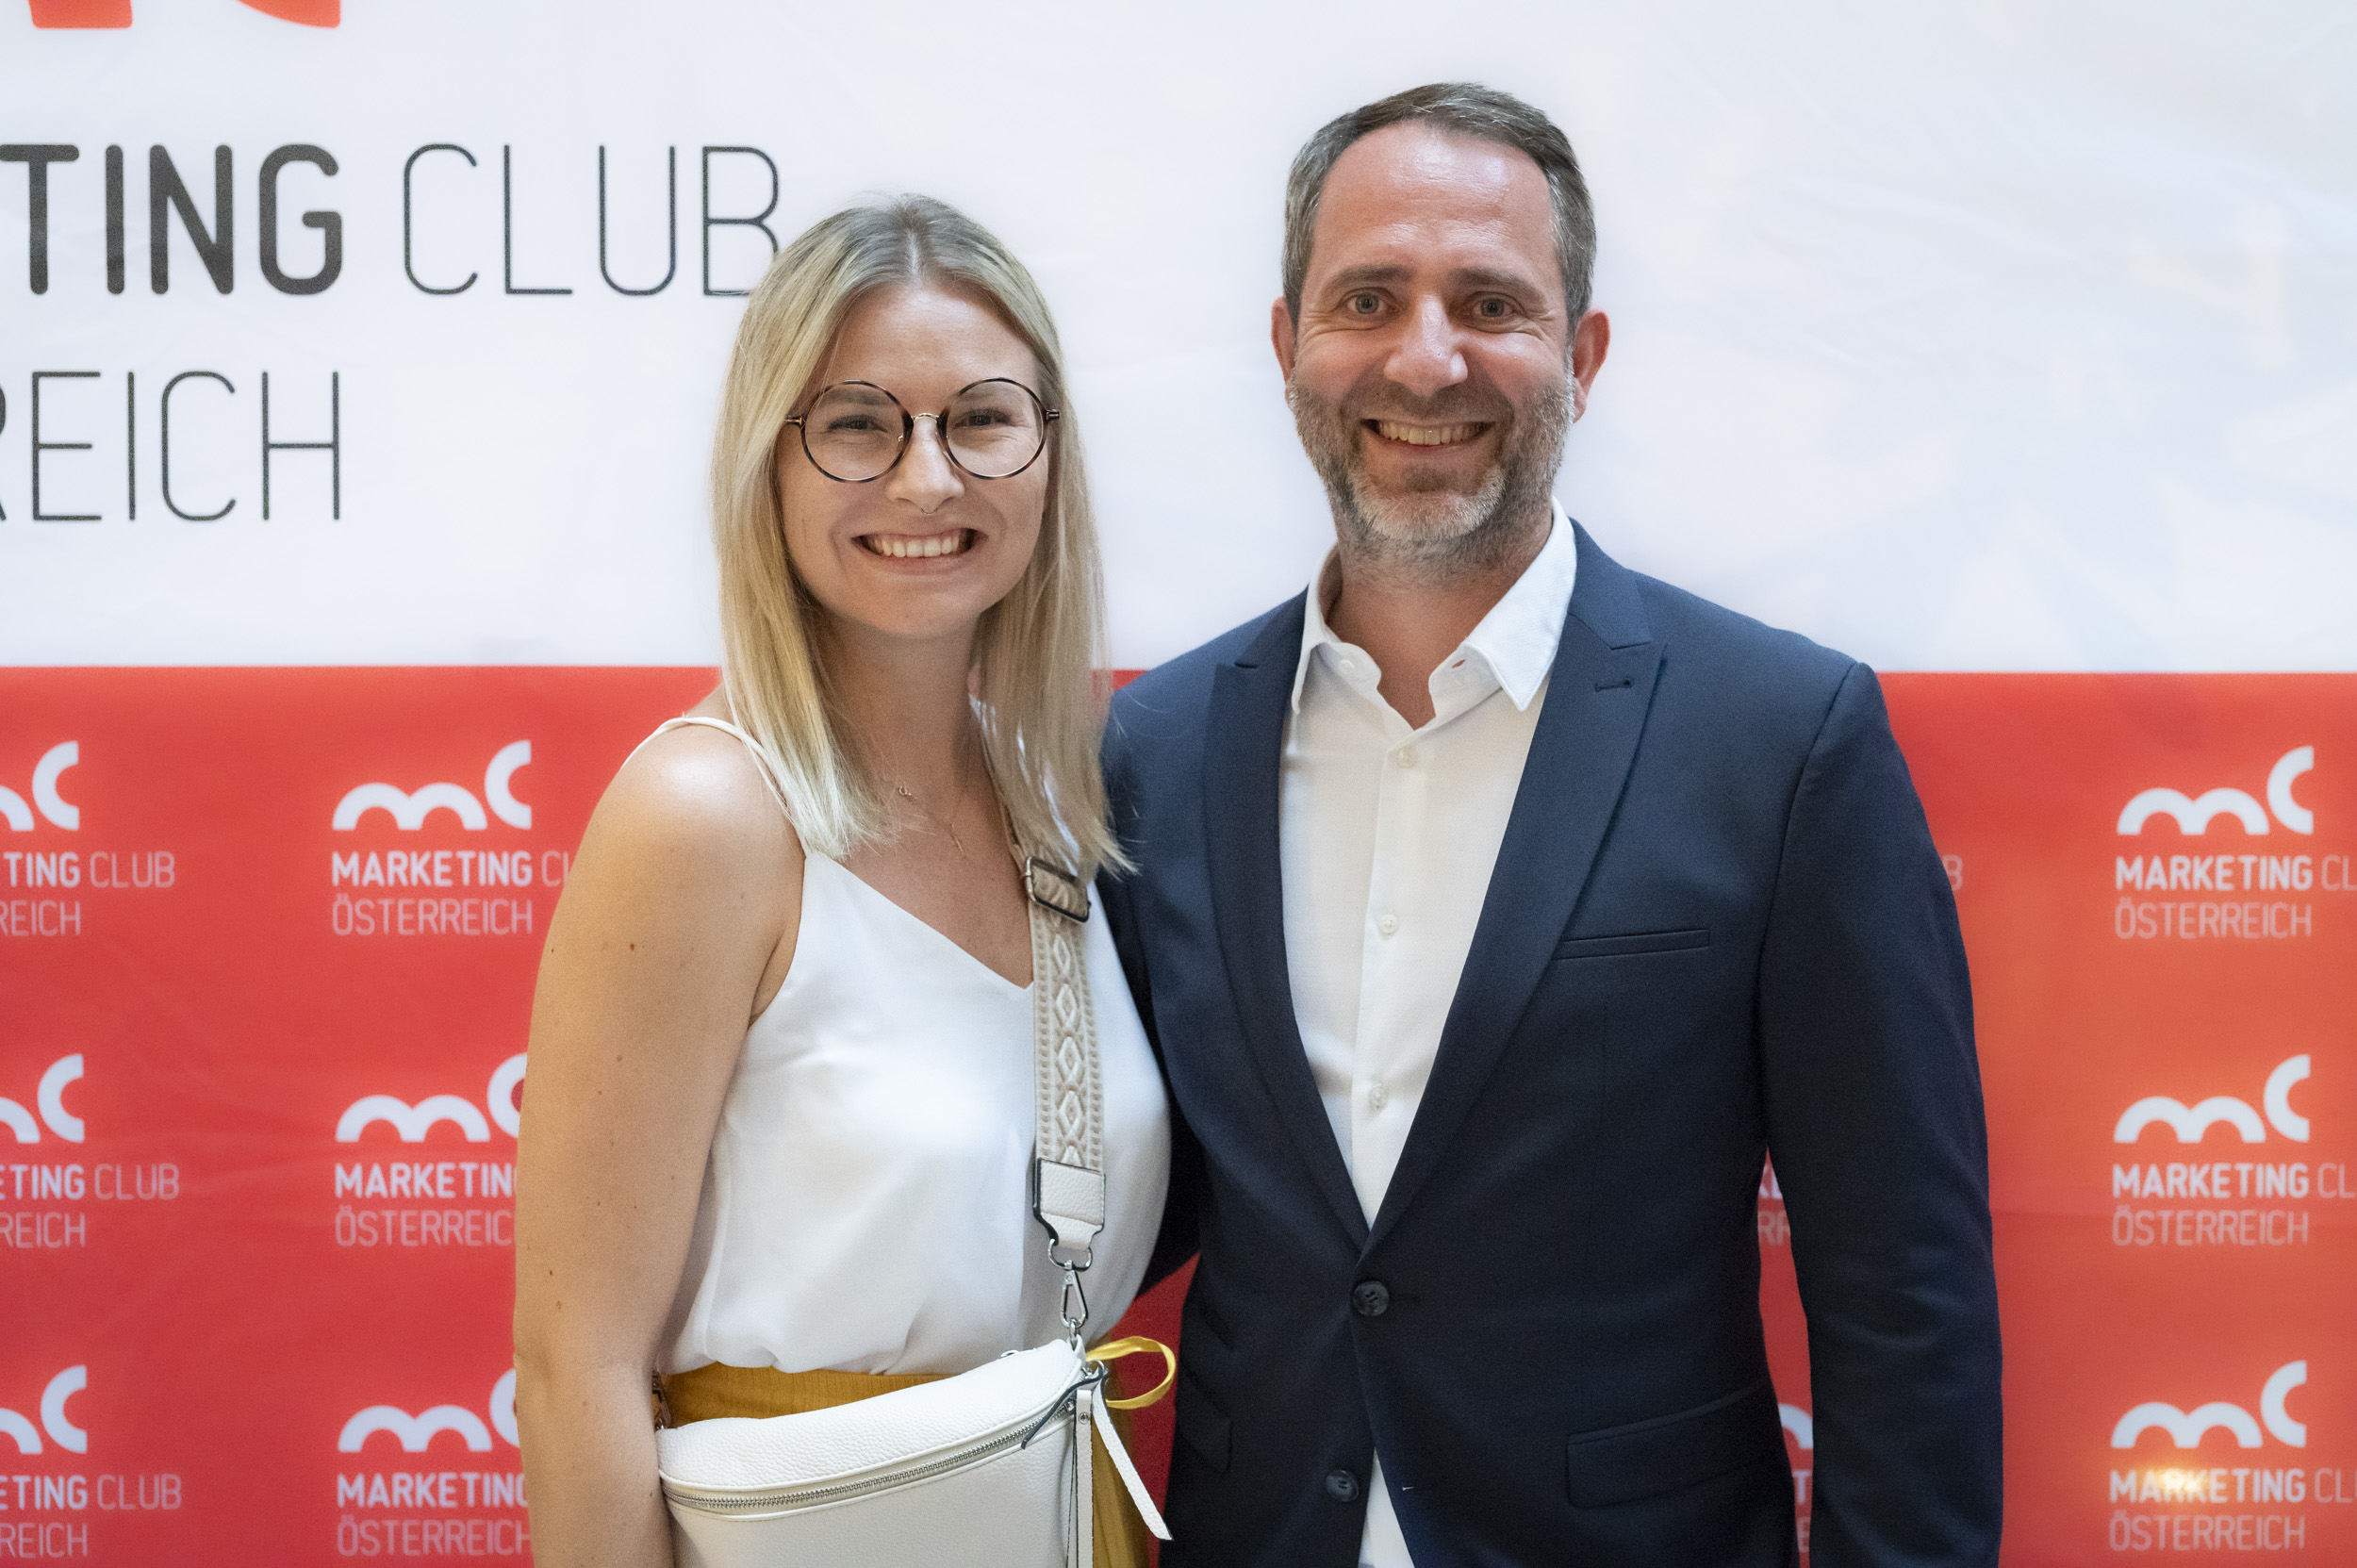 Die besten Fotos von der Fotowand des Marketing Club Österreich bei der Verleihung der Marketing Leader of the year 2022 Awards